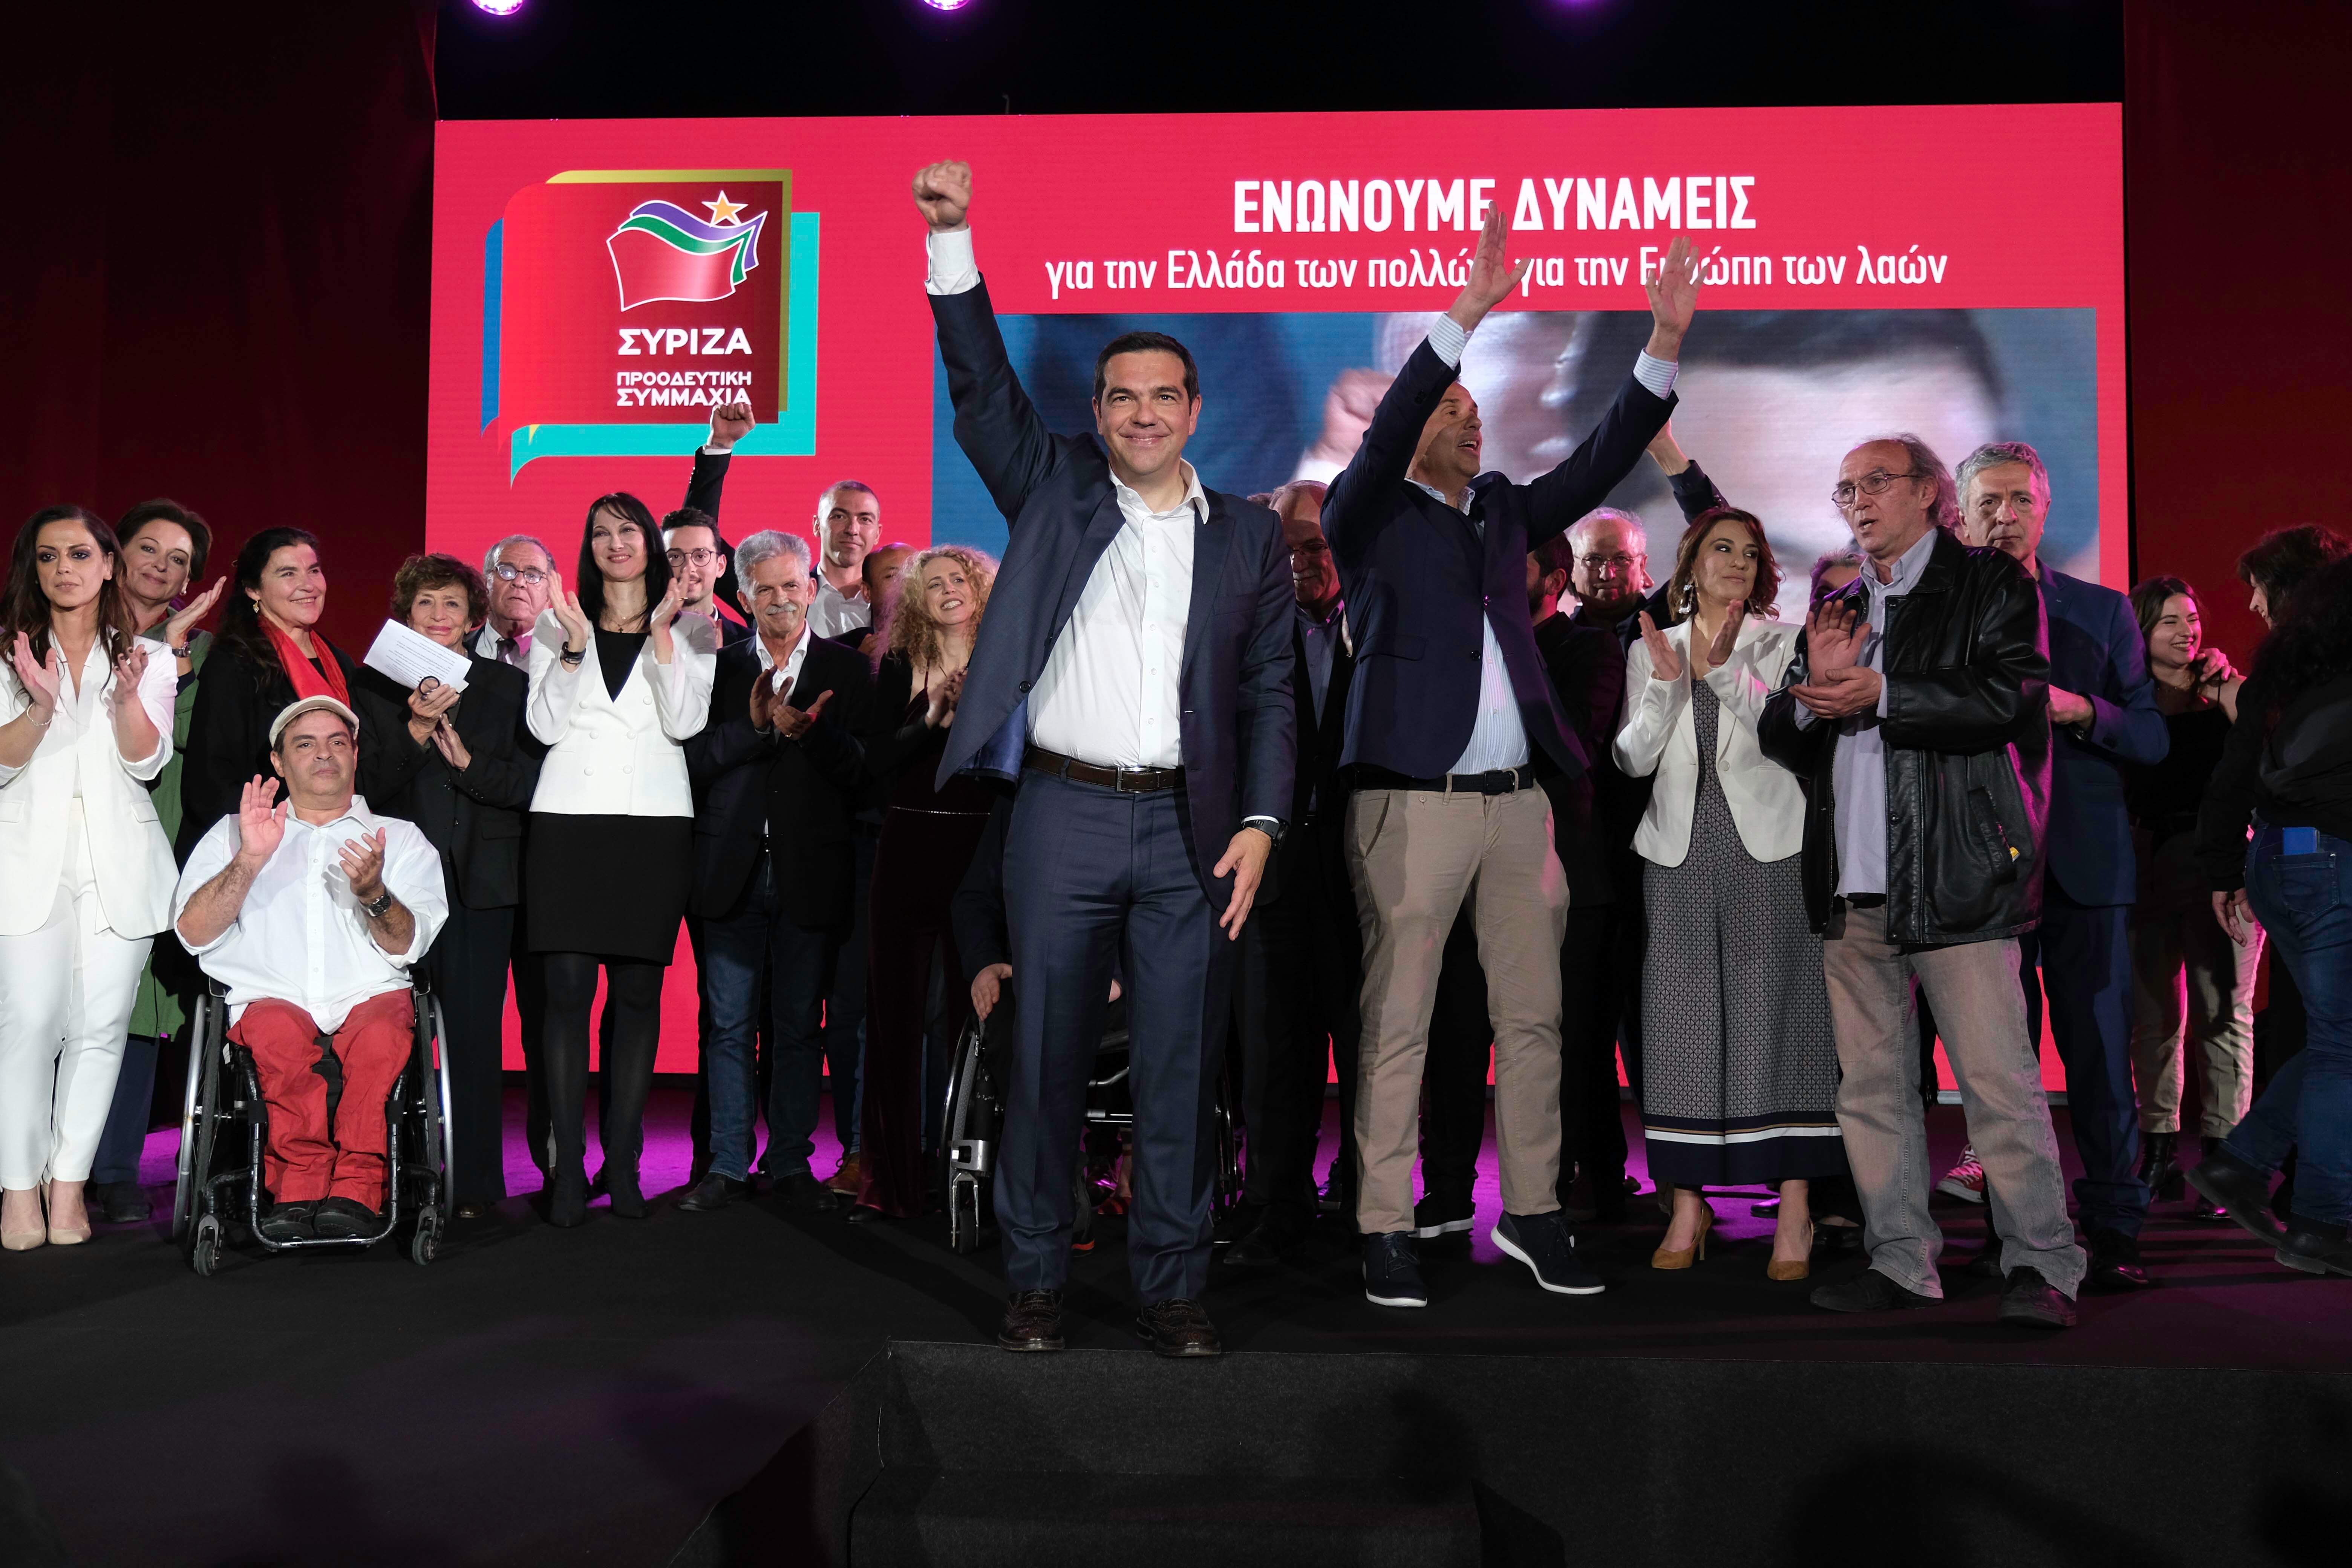 Ευρωεκλογές 2019: Αυτοί είναι οι 4 υποψήφιοι του ΣΥΡΙΖΑ που προηγούνται στις δημοσκοπήσεις